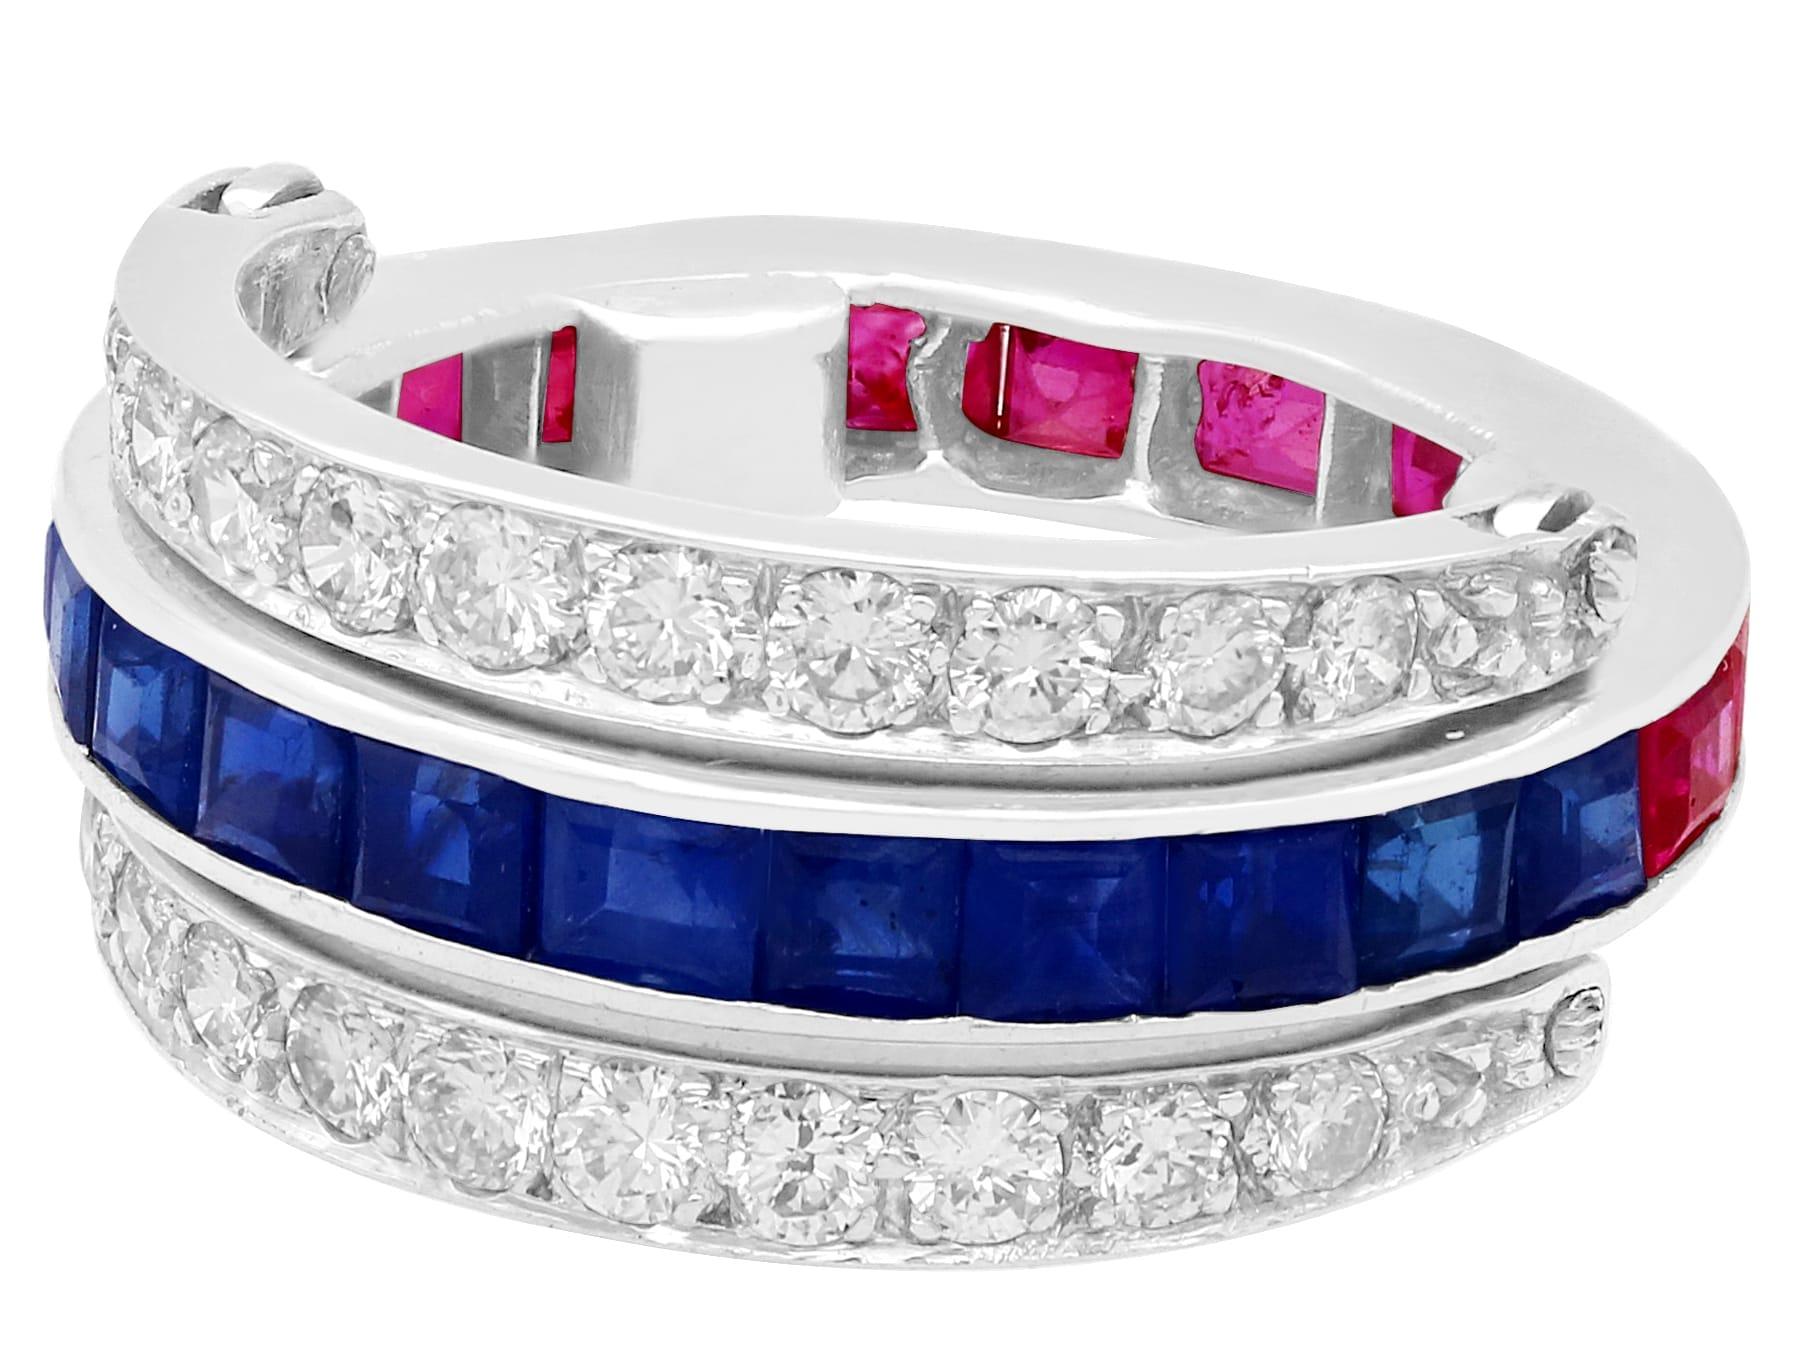 Ein atemberaubender, feiner und beeindruckender französischer Vintage-Ring aus den 1940er Jahren mit einem Rubin von 0,90 Karat, einem Saphir von 0,90 Karat und einem Diamanten von 0,80 Karat mit Scharnier aus Platin; Teil unserer vielfältigen